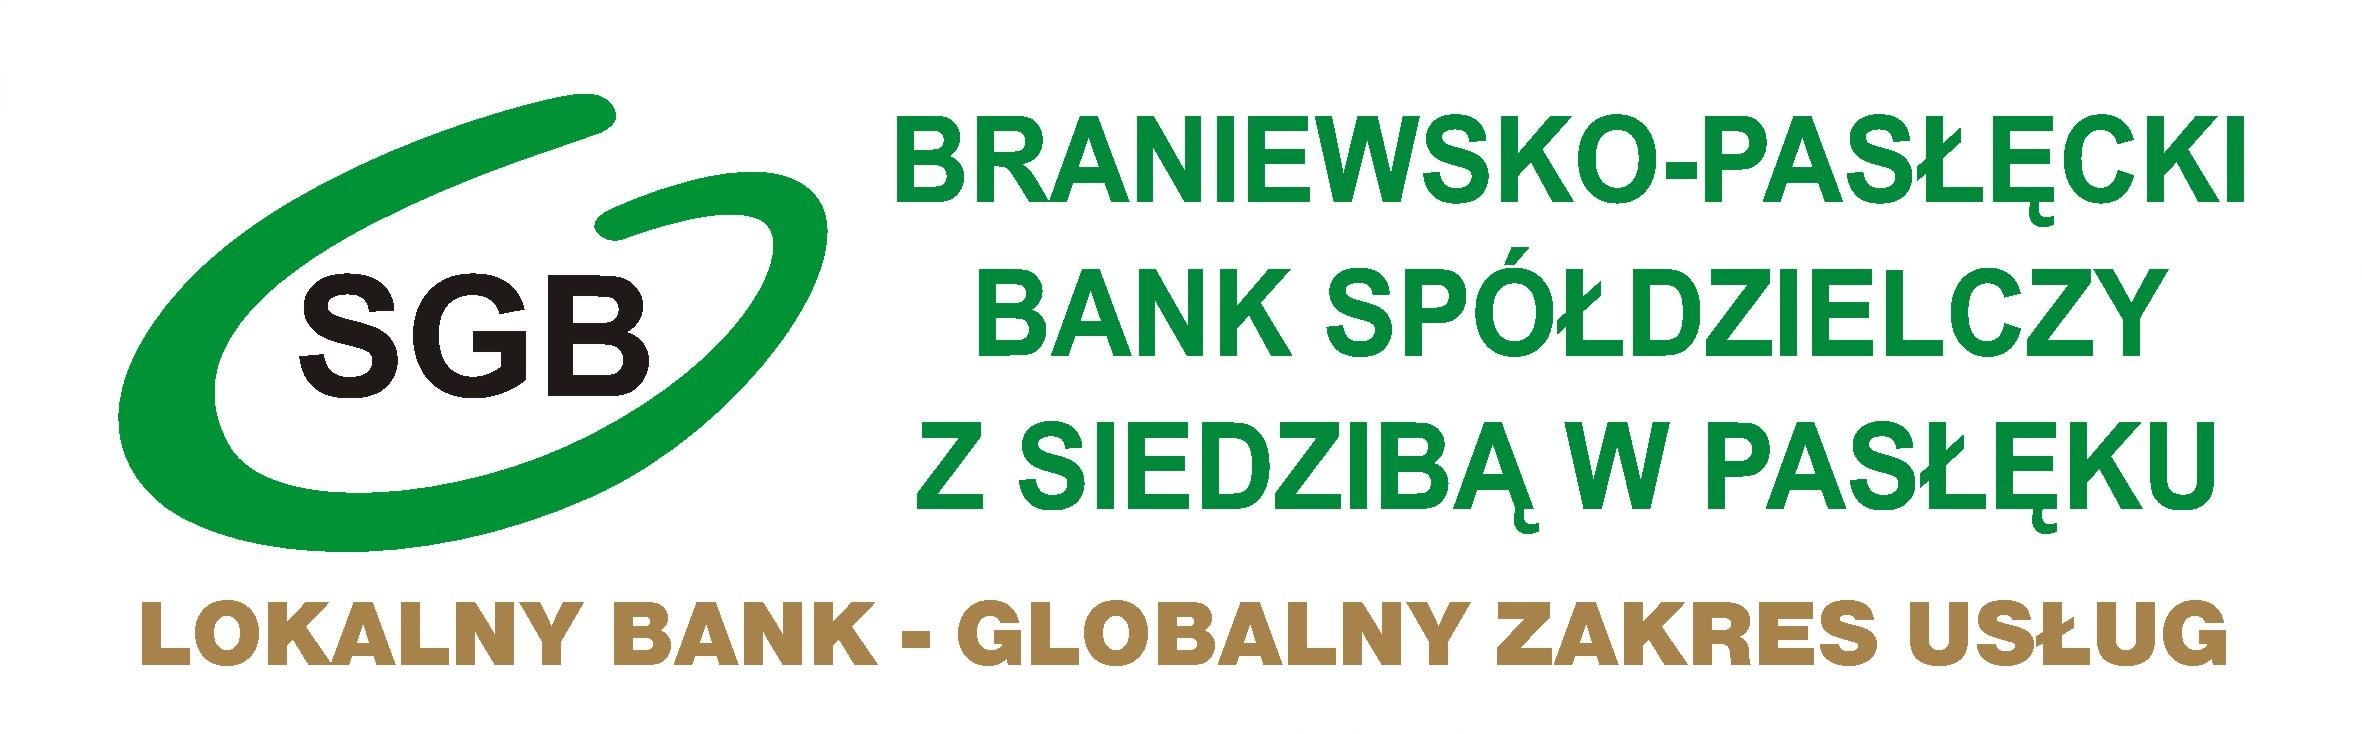 KANTOR SGB - Braniewsko-Pasłęcki Bank Spółdzielczy z siedzibą w Pasłęku